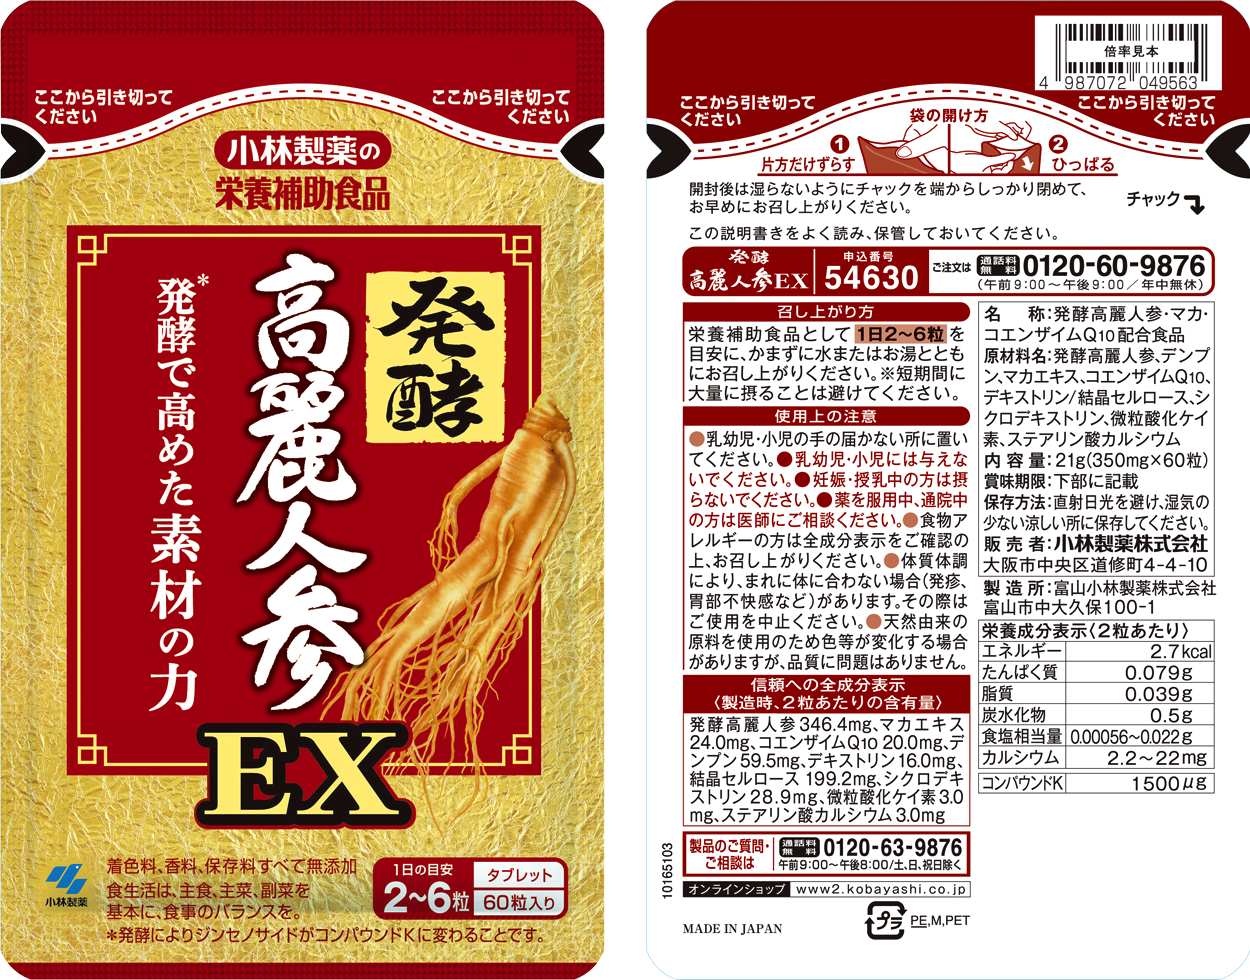 発酵高麗人参EX | 小林製薬の通販(健康食品・サプリメント)